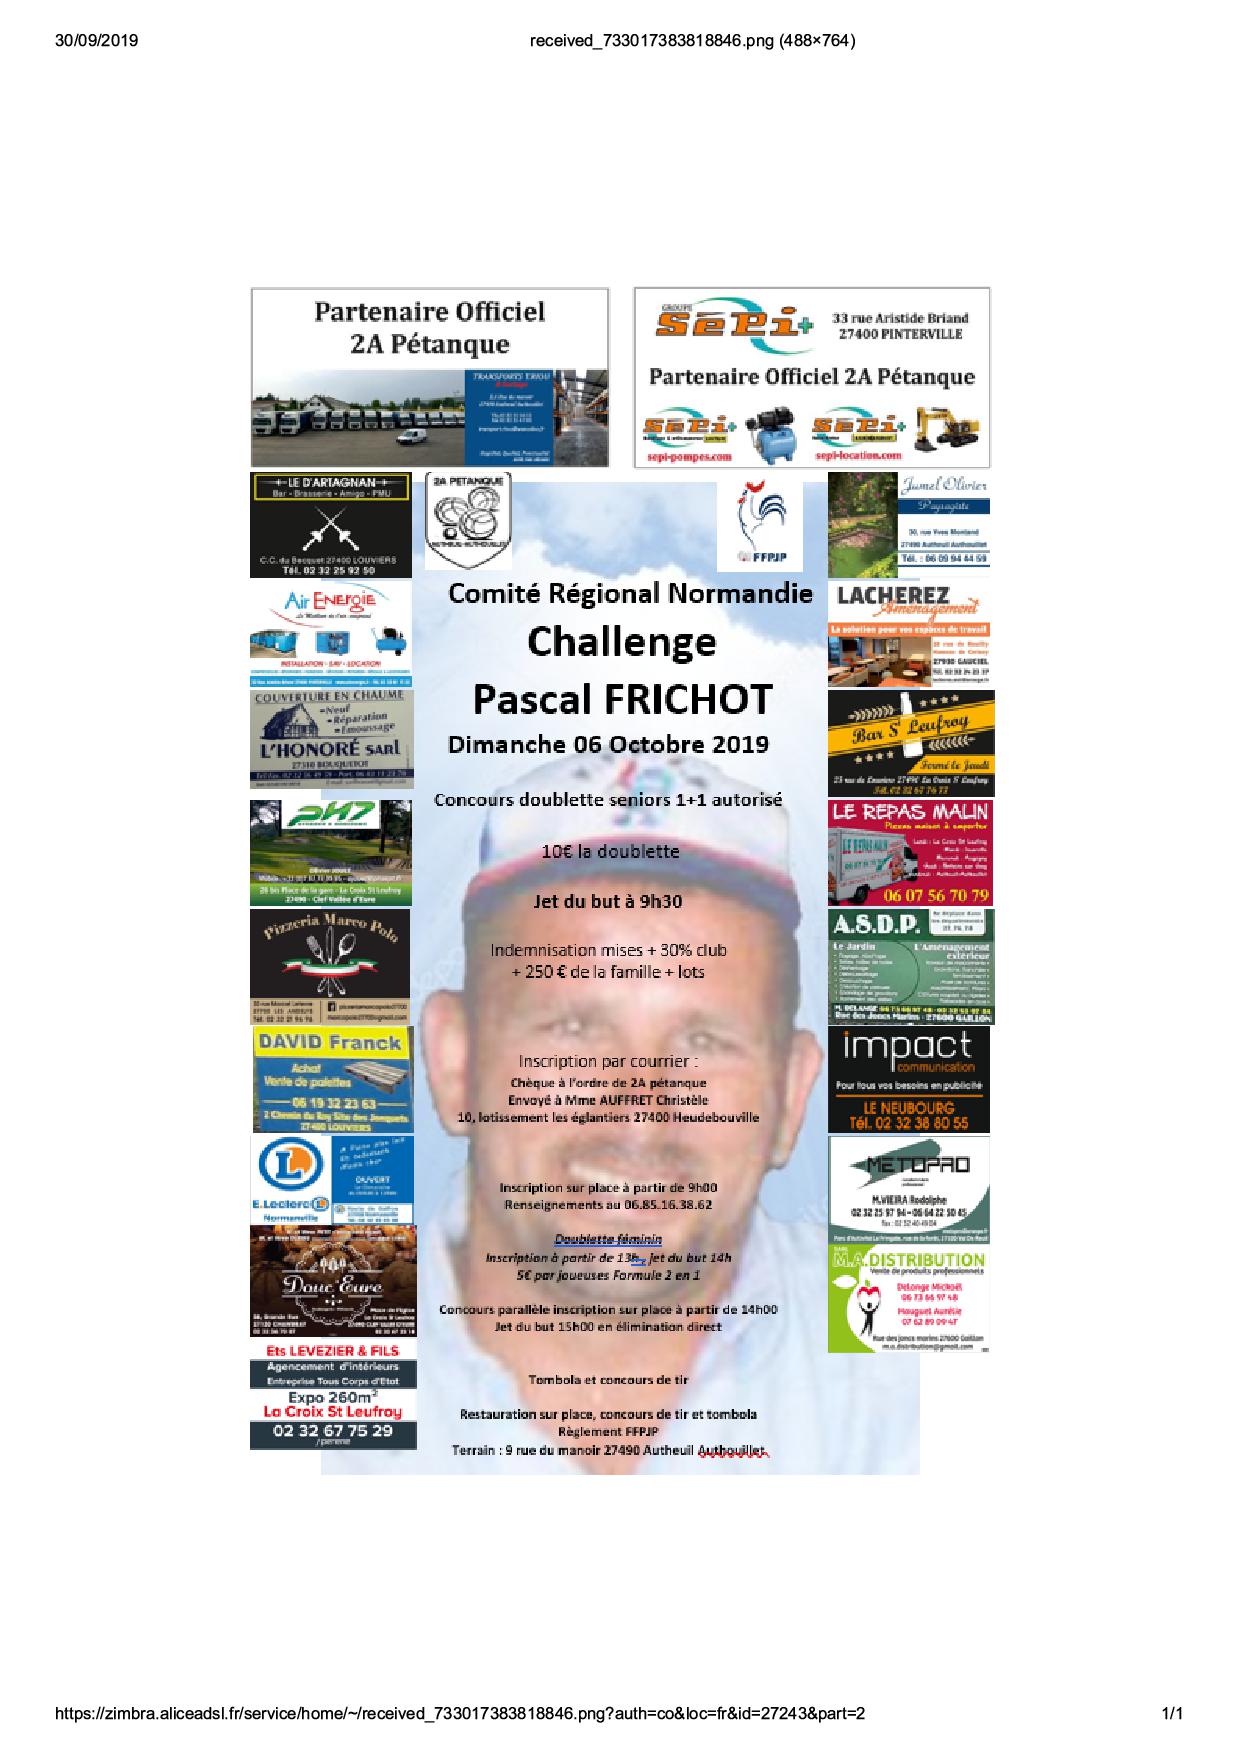 Challenge Pascal Frichot Dimanche 6 octobre